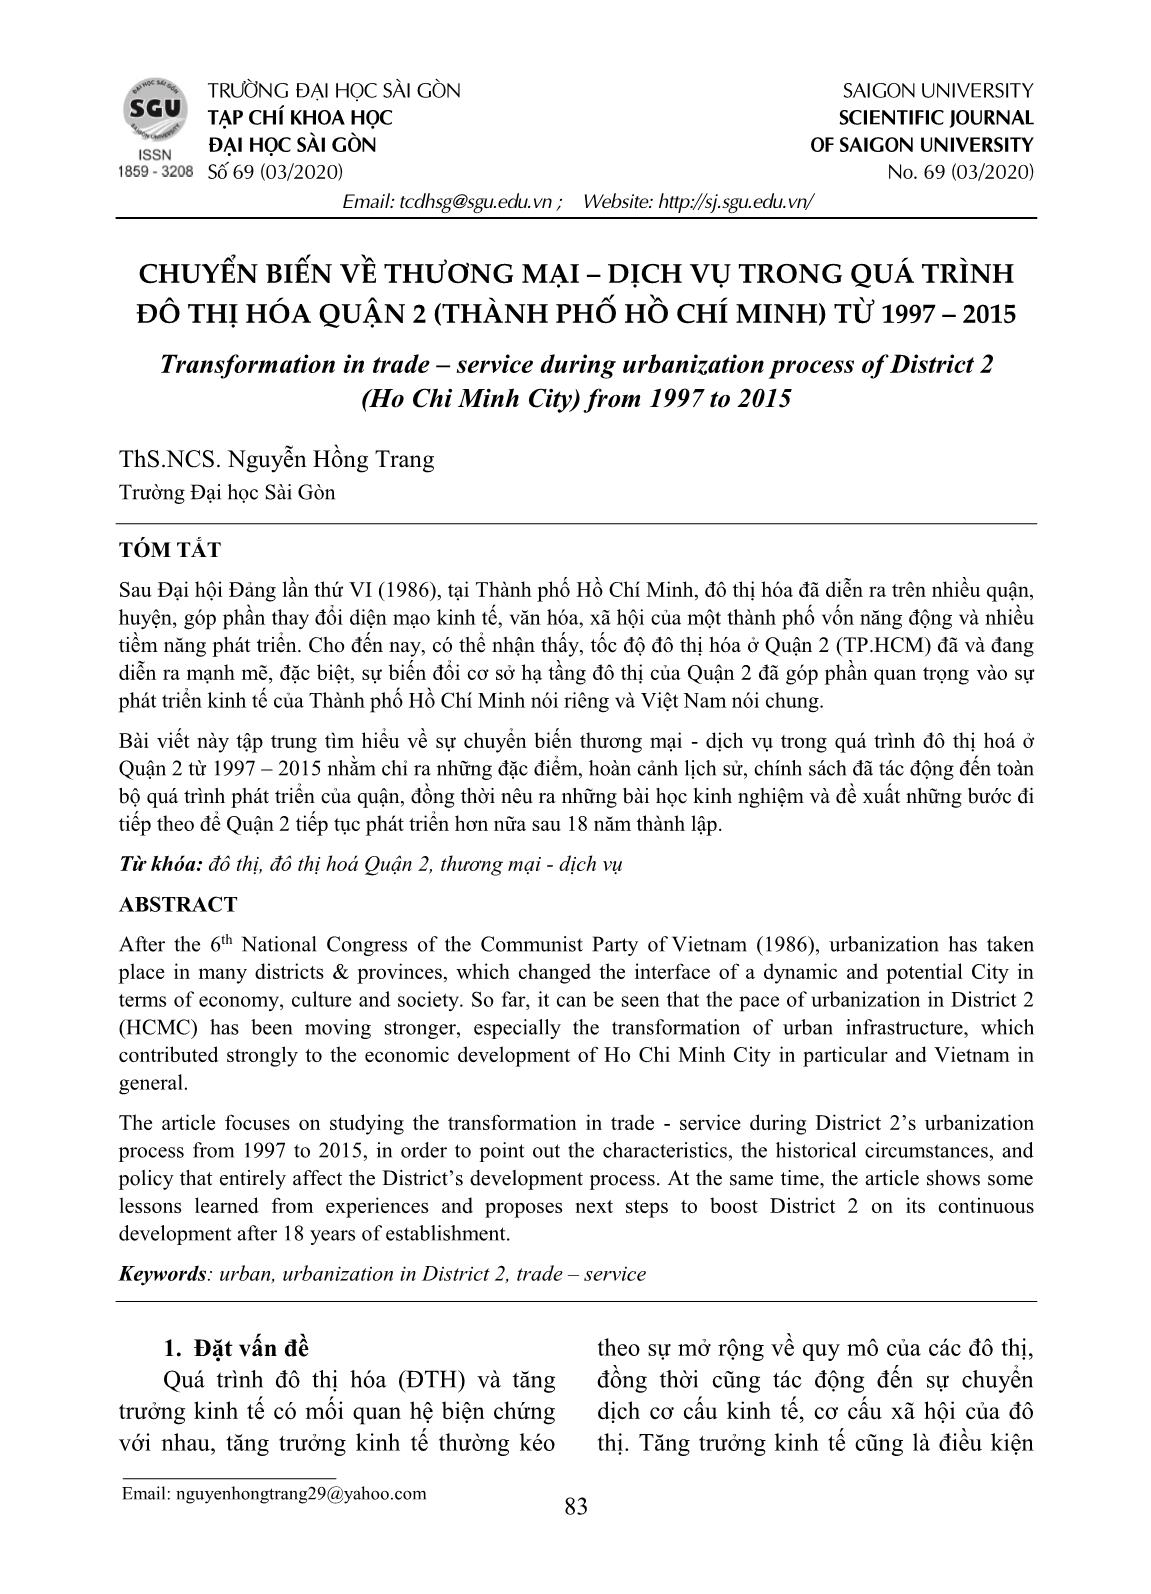 Chuyển biến về thương mại - dịch vụ trong quá trình đô thị hóa quận 2 (thành phố Hồ Chí Minh) từ 1997-2015 trang 1